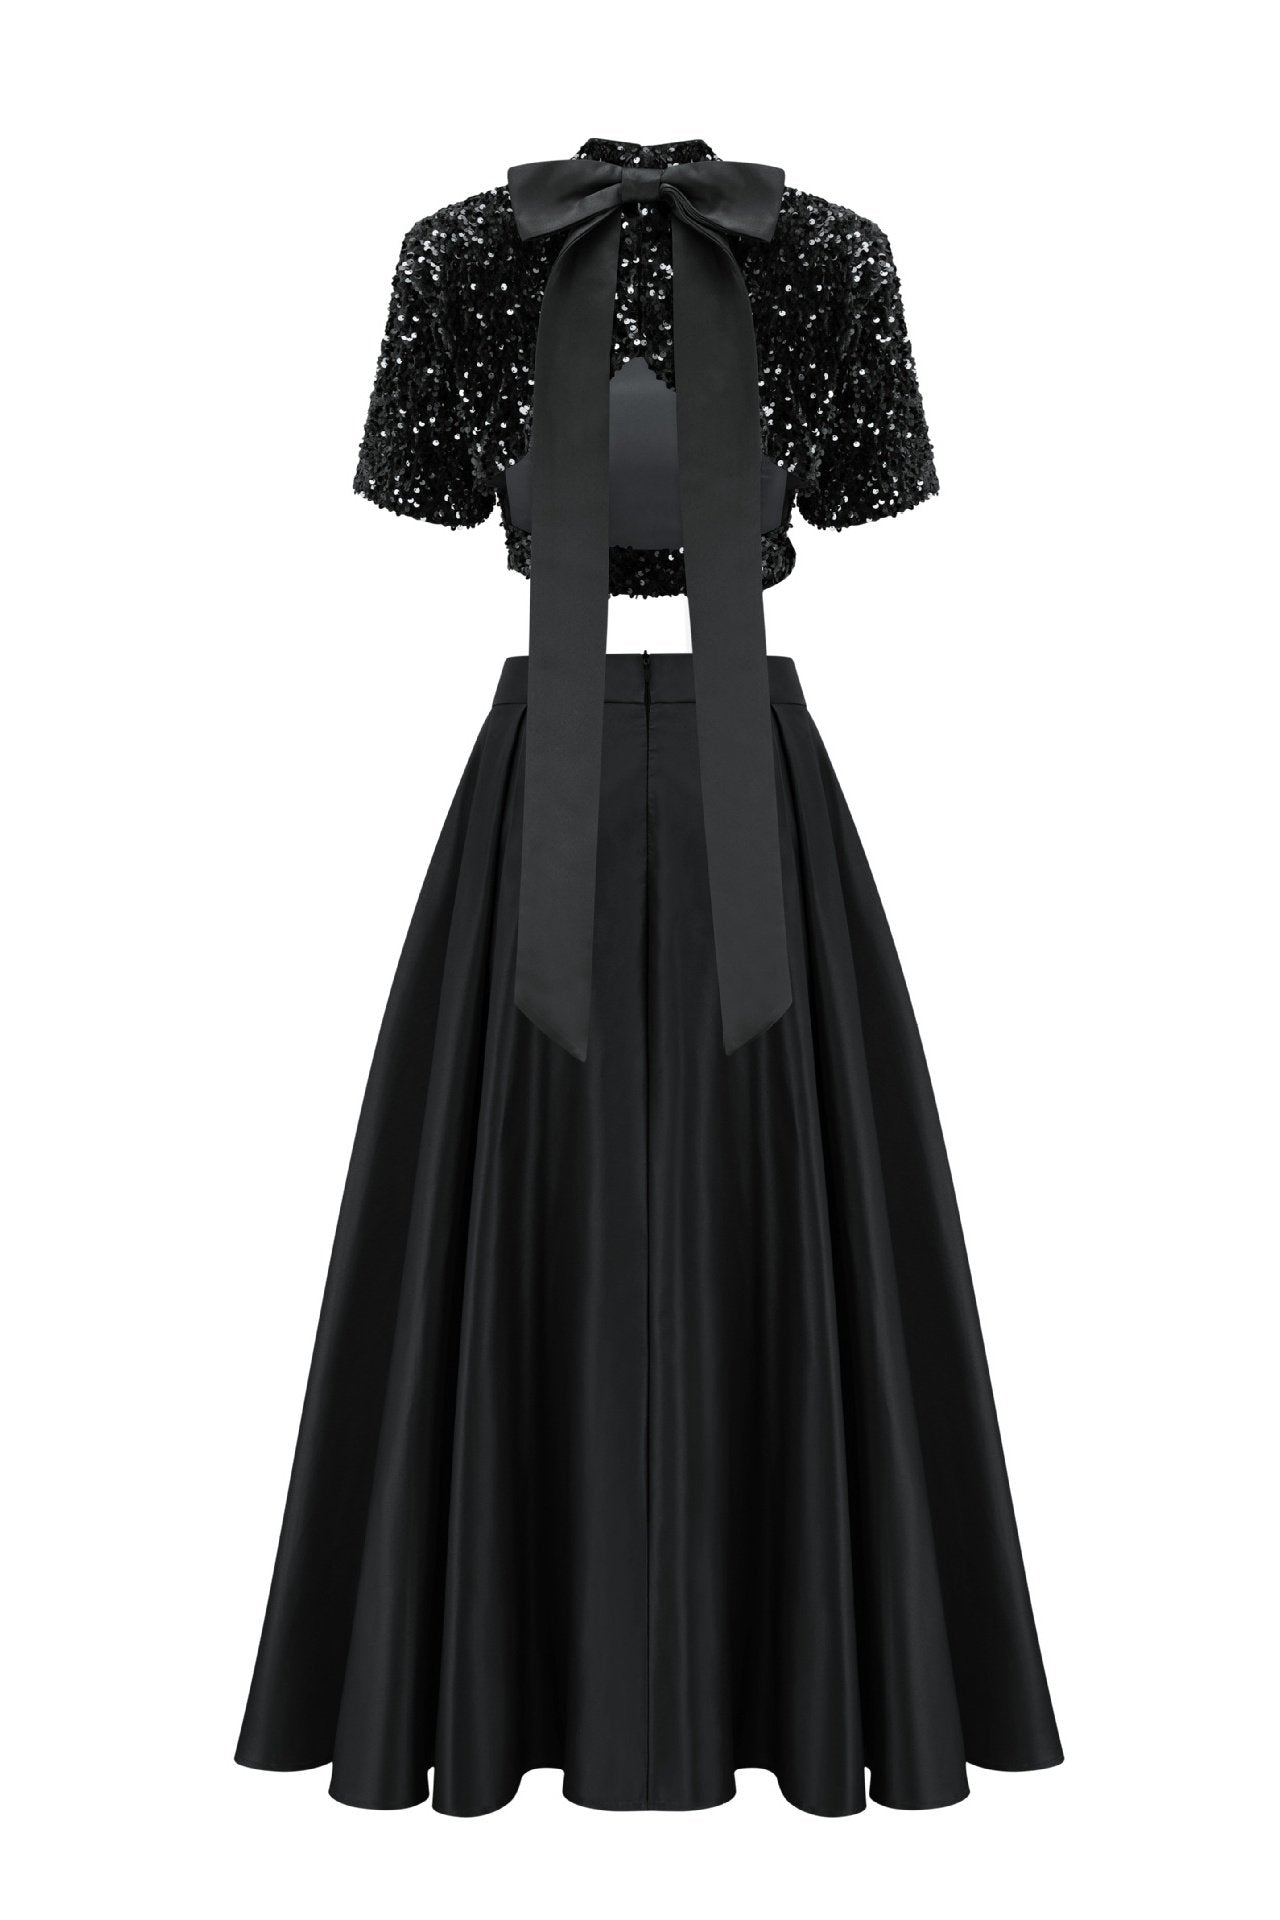 -Leia Bow-tie Sequins Slit Set-SD00211221940-Black-S - Sunfere